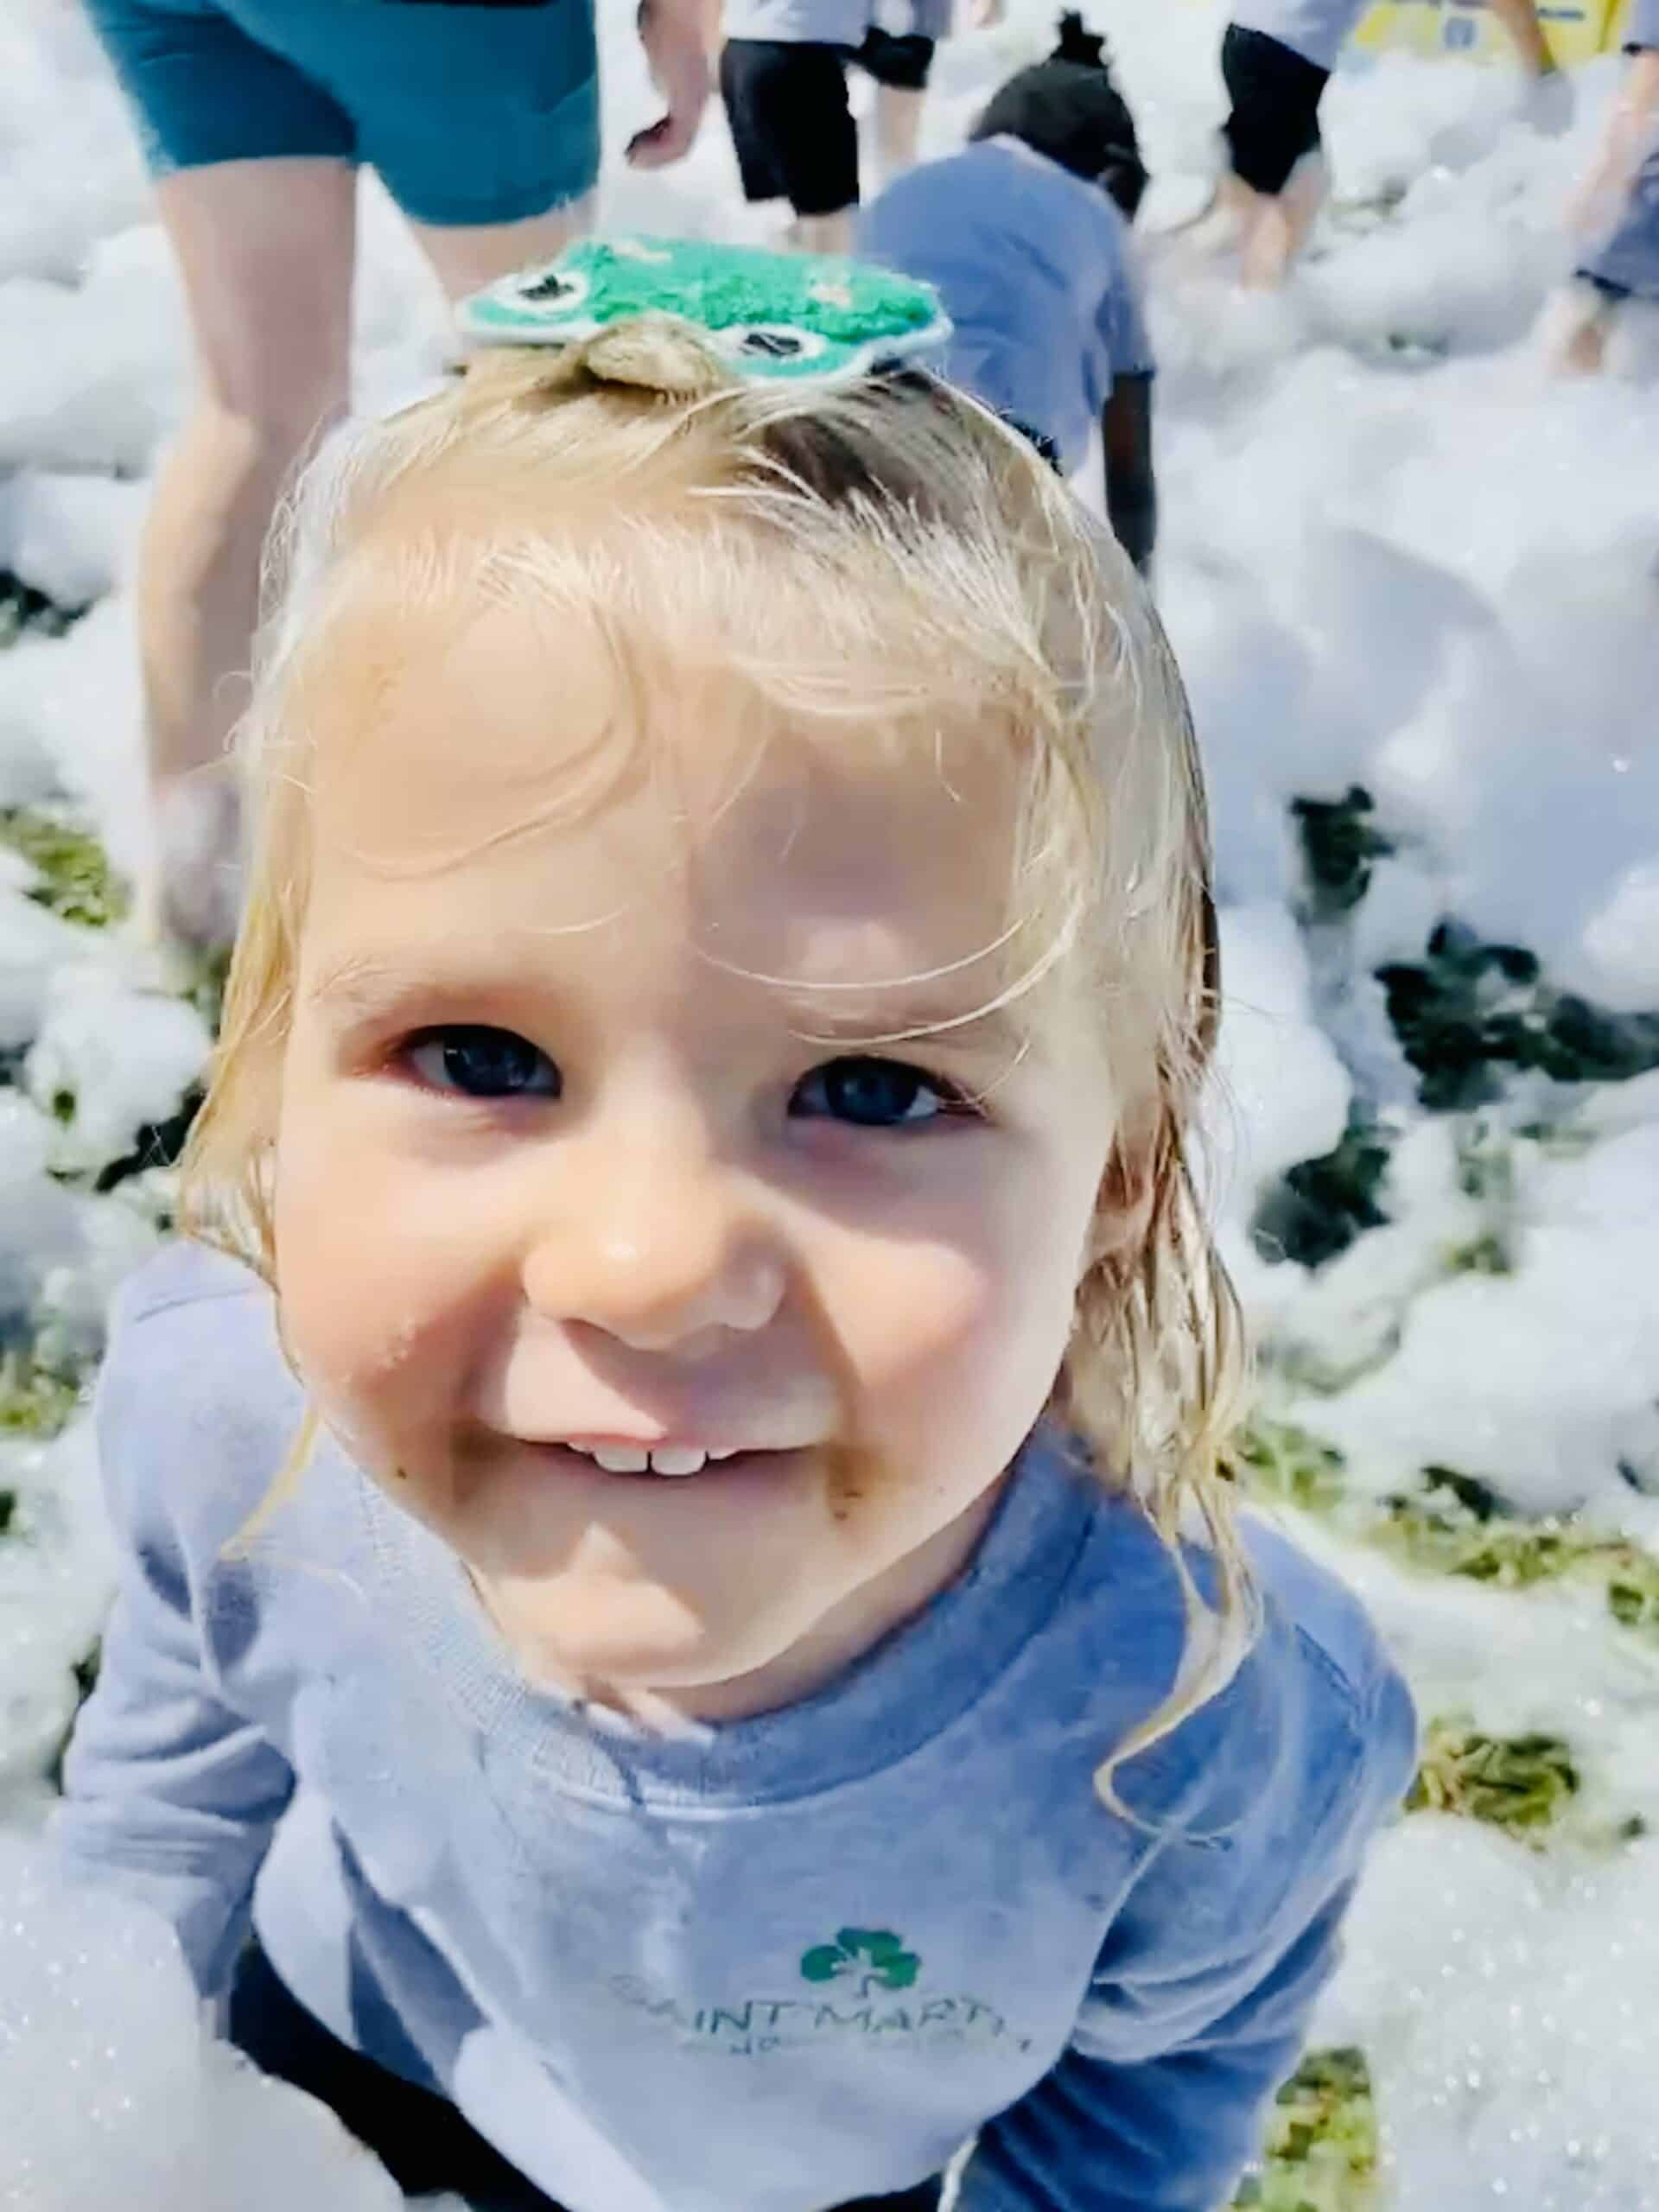 A little girl smiling in a field of foam bubbles.